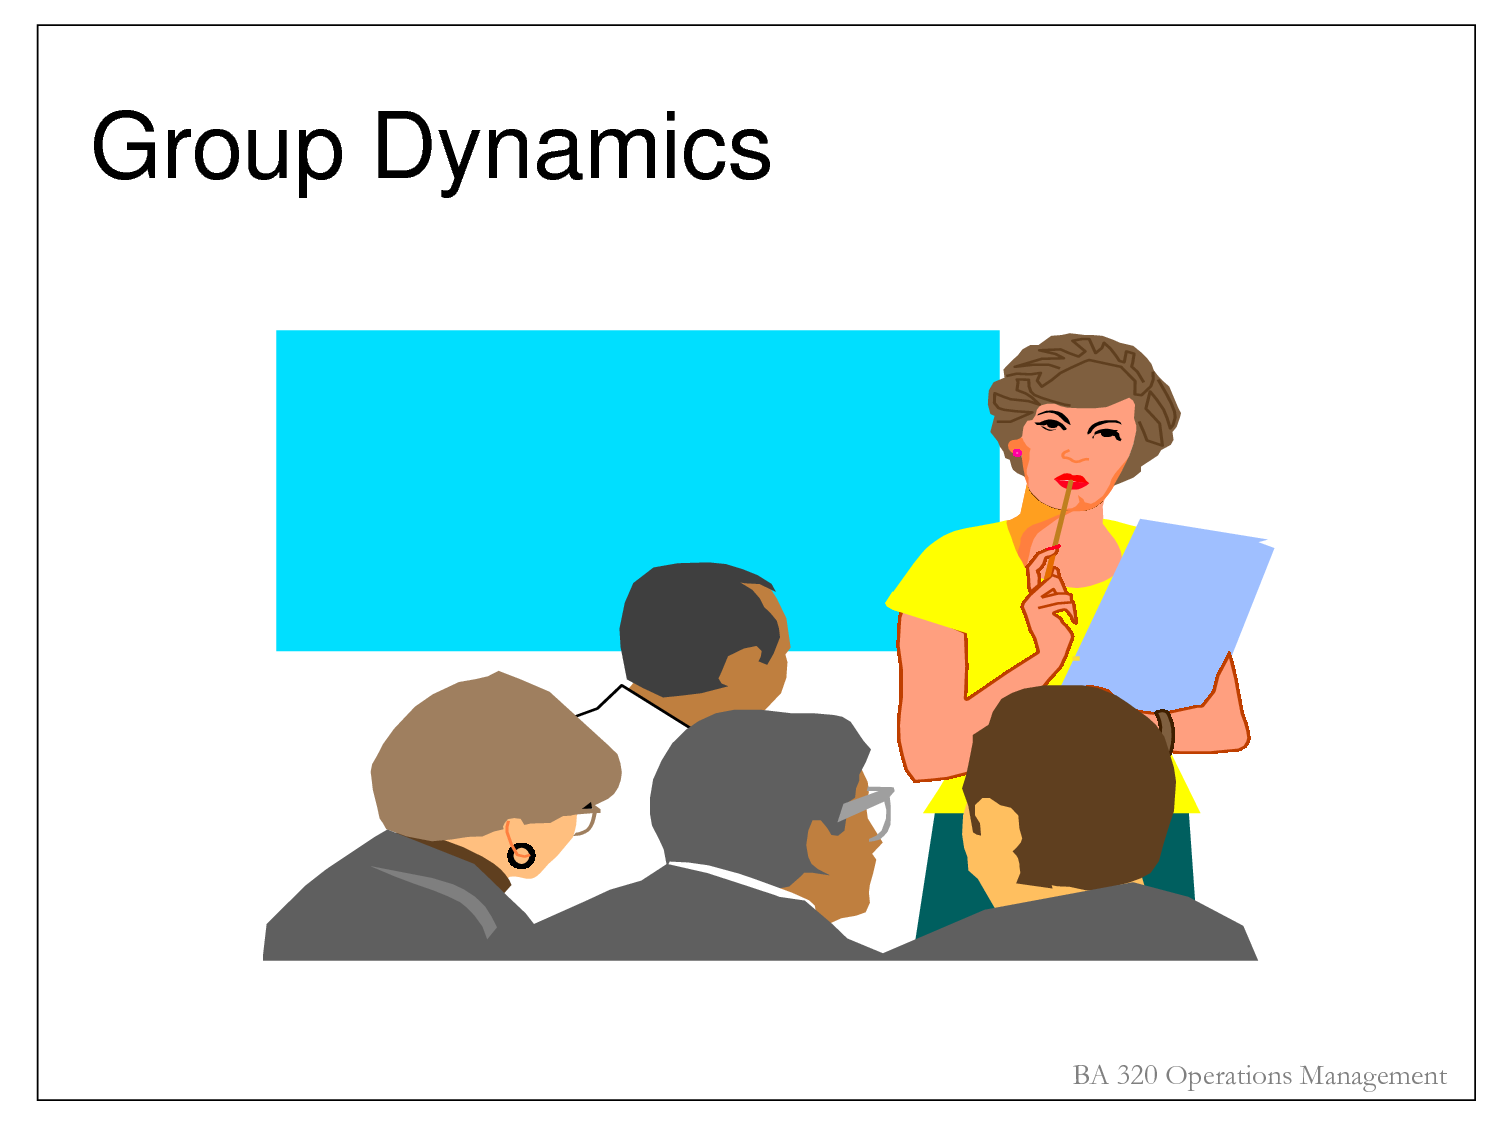 Group Dynamics Images - ClipArt Best